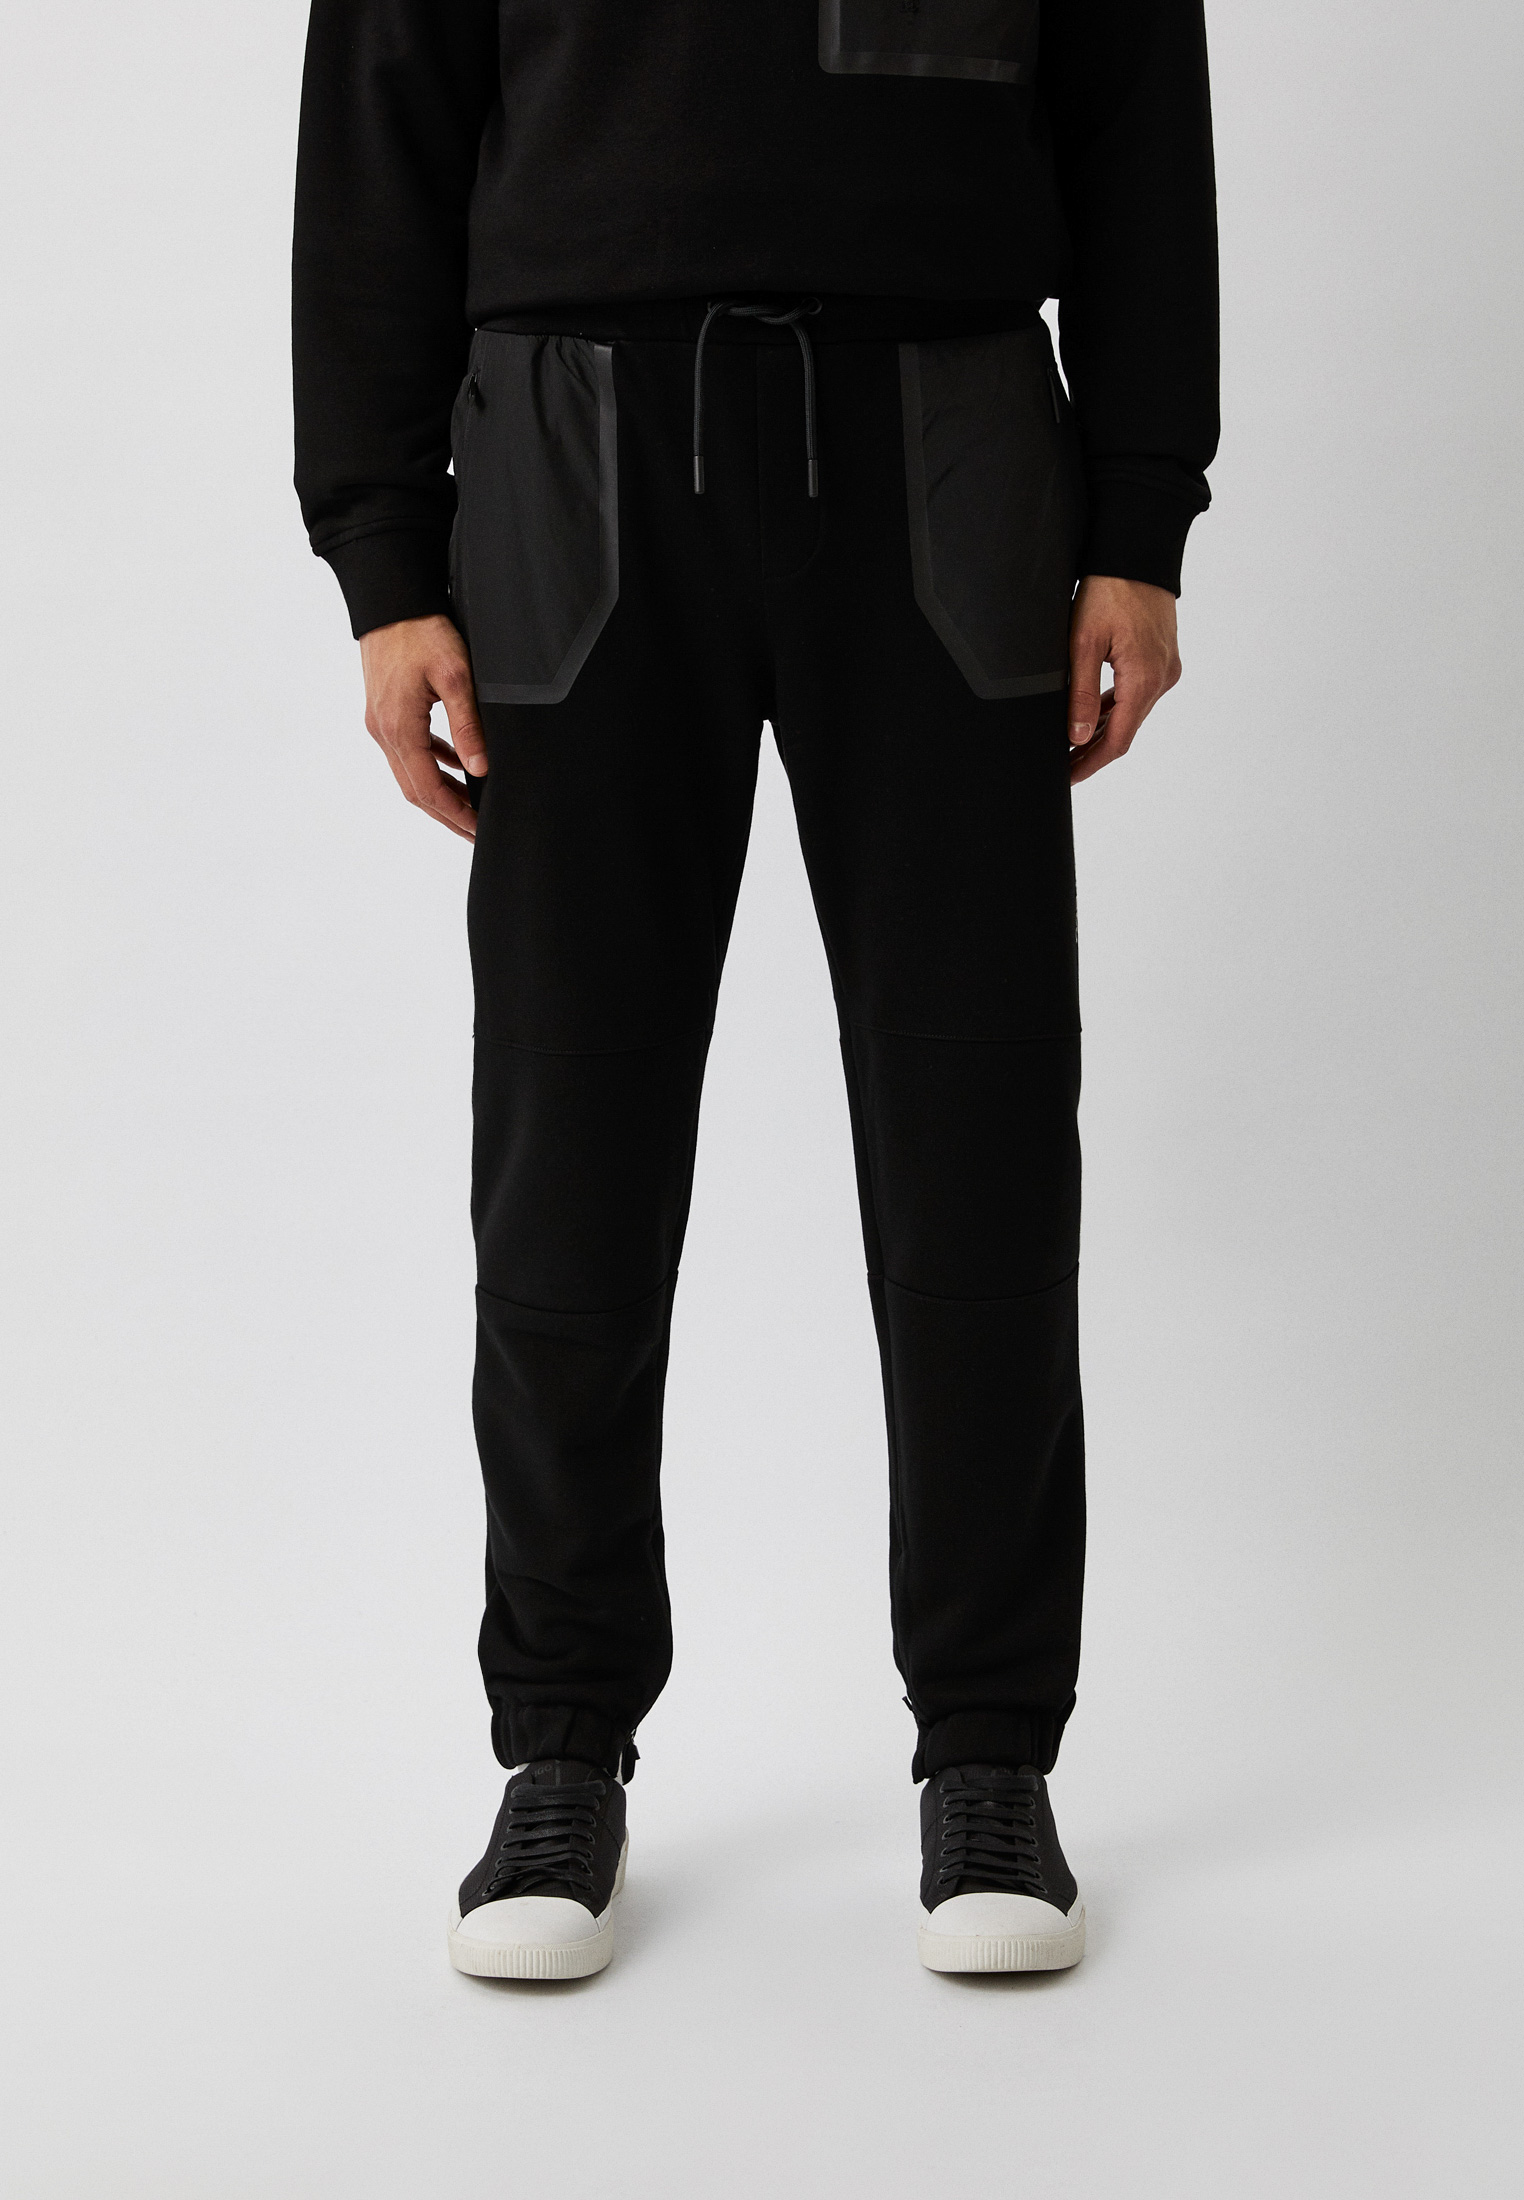 Мужские спортивные брюки Karl Lagerfeld (Карл Лагерфельд) 705063-533910: изображение 1